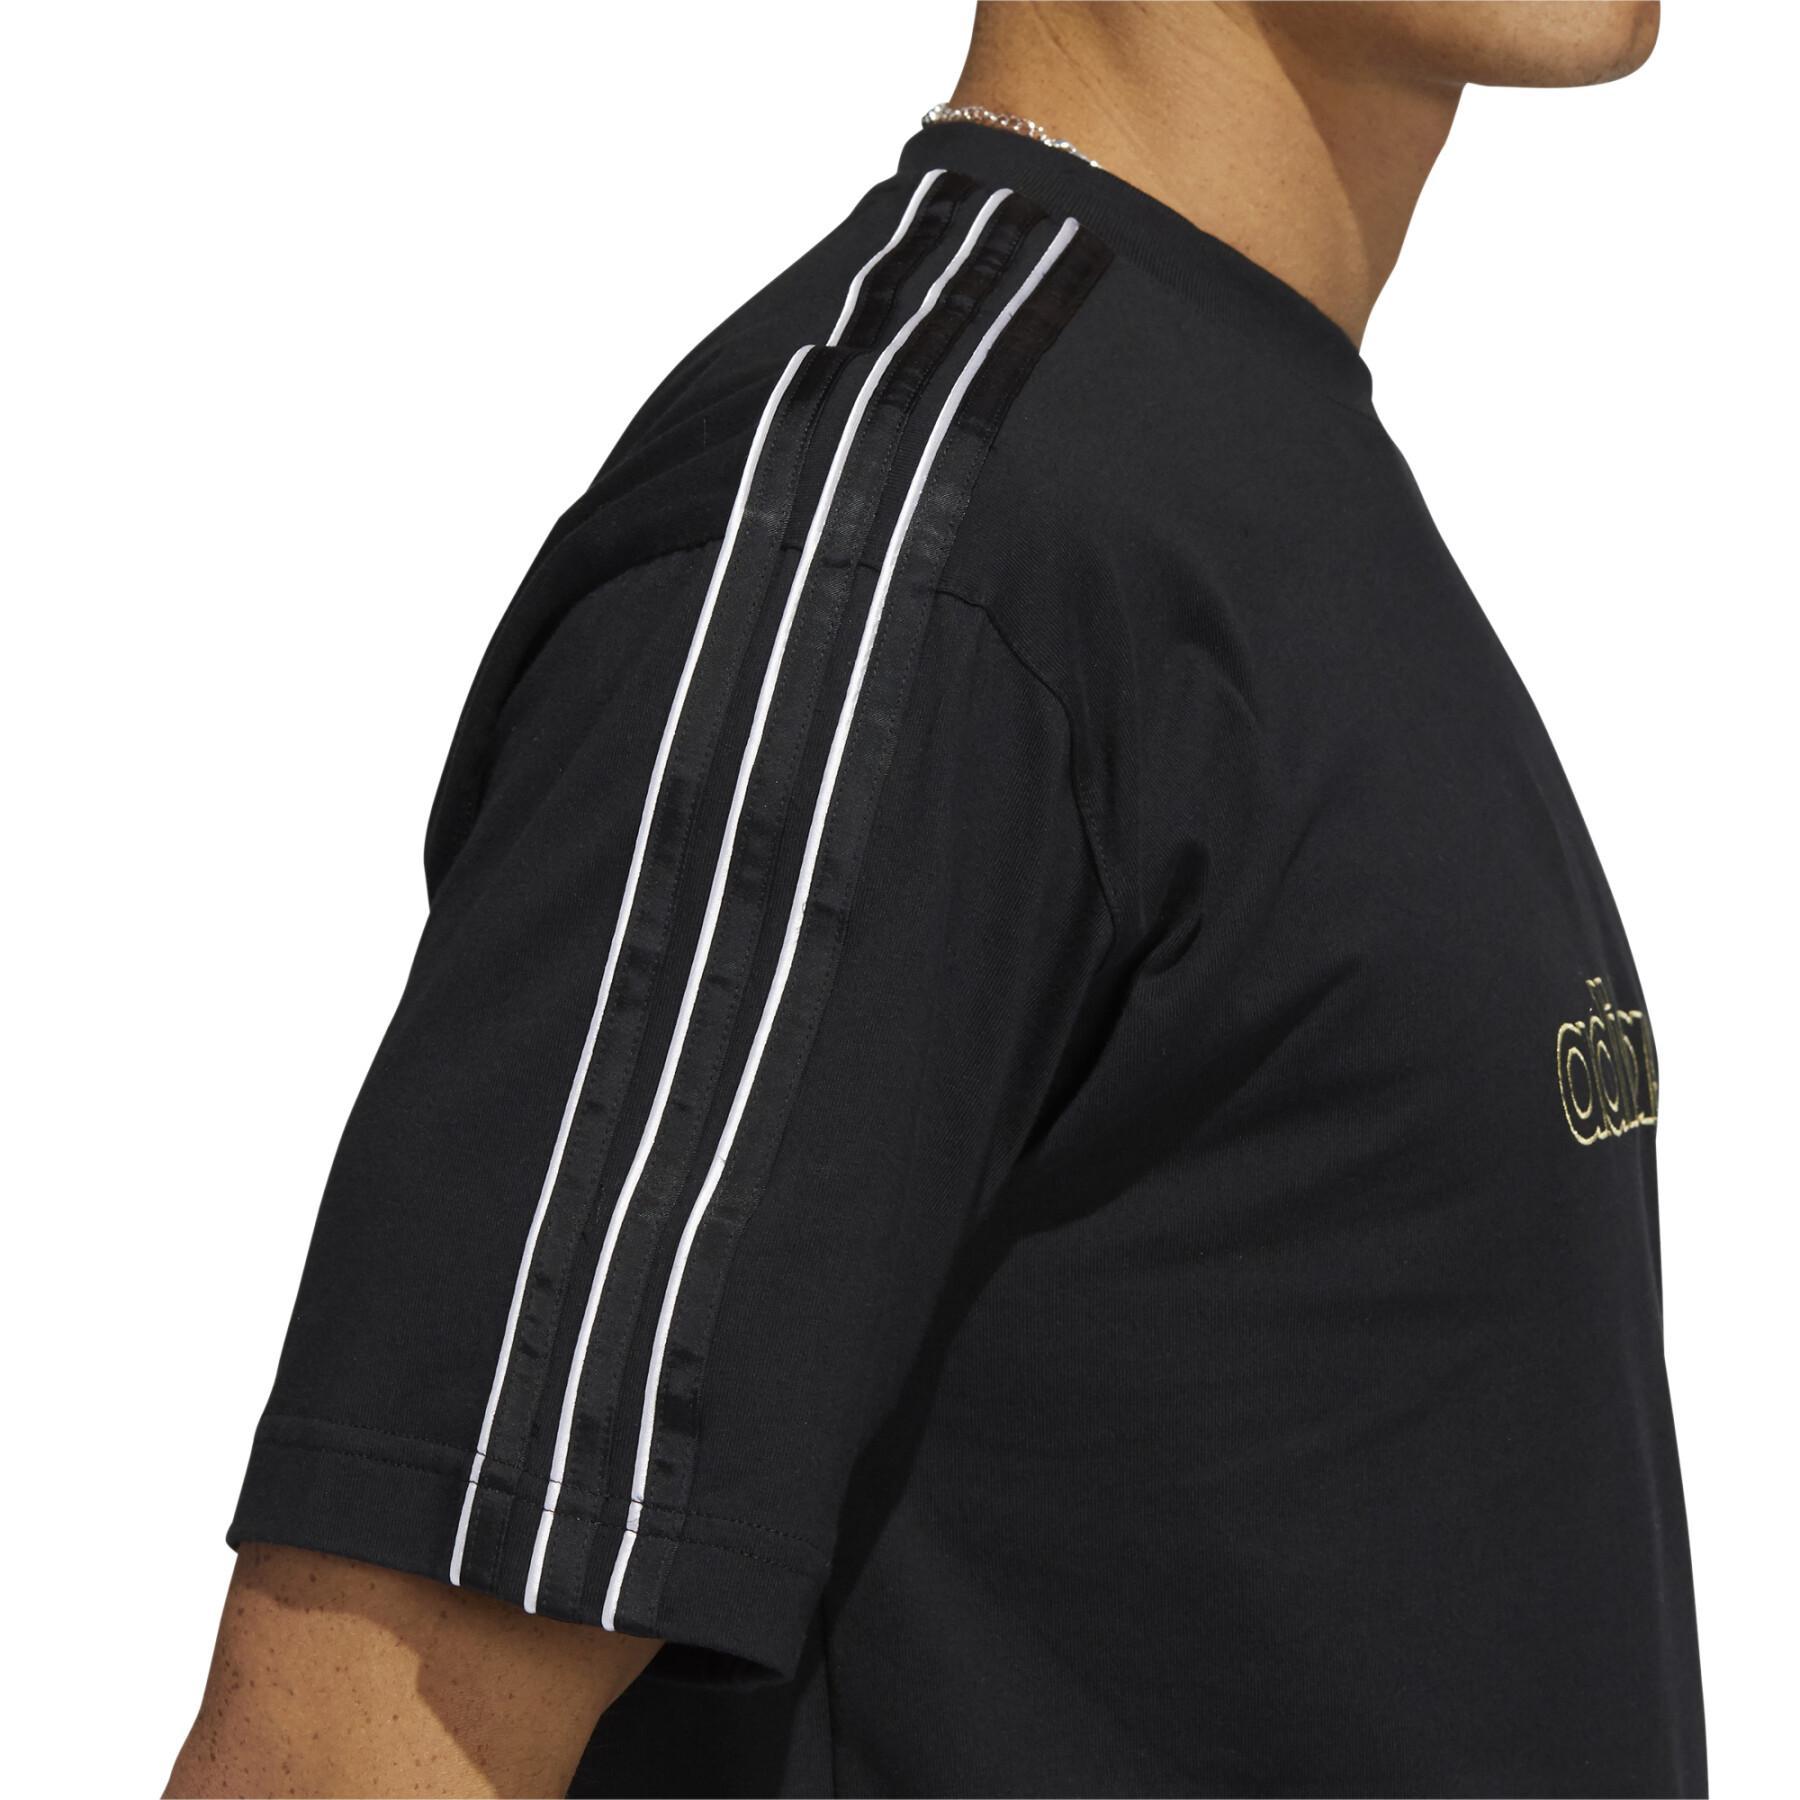 Camiseta adidas Originals SPRT Shadow 3-Stripes